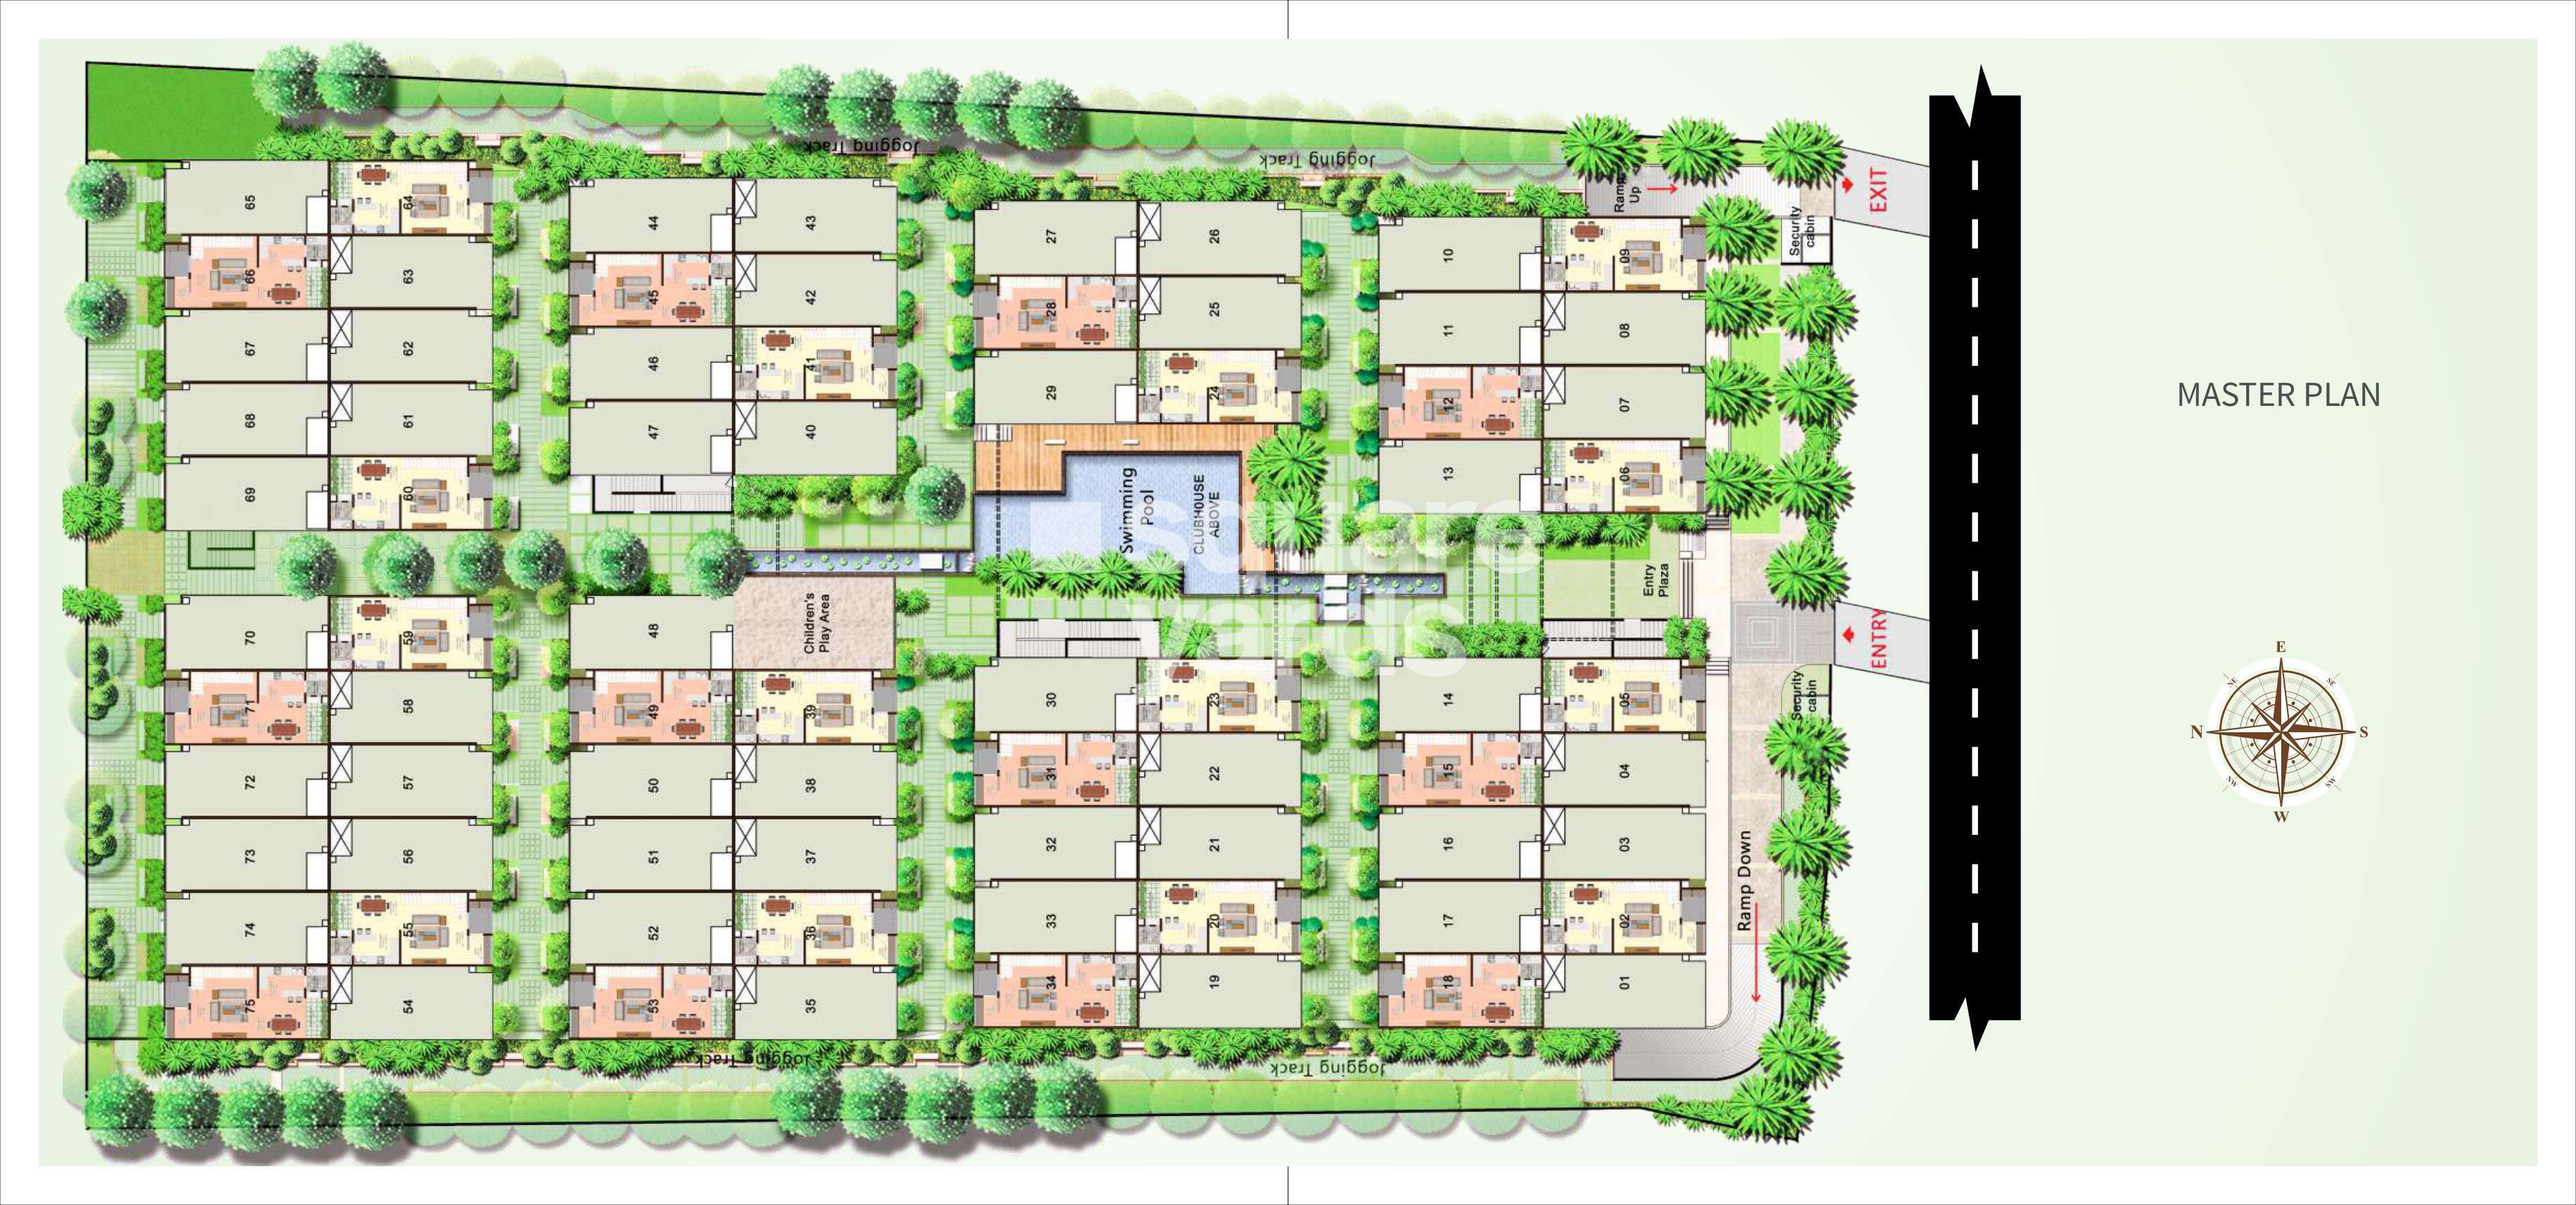 citrus zen garden project master plan image1 9496